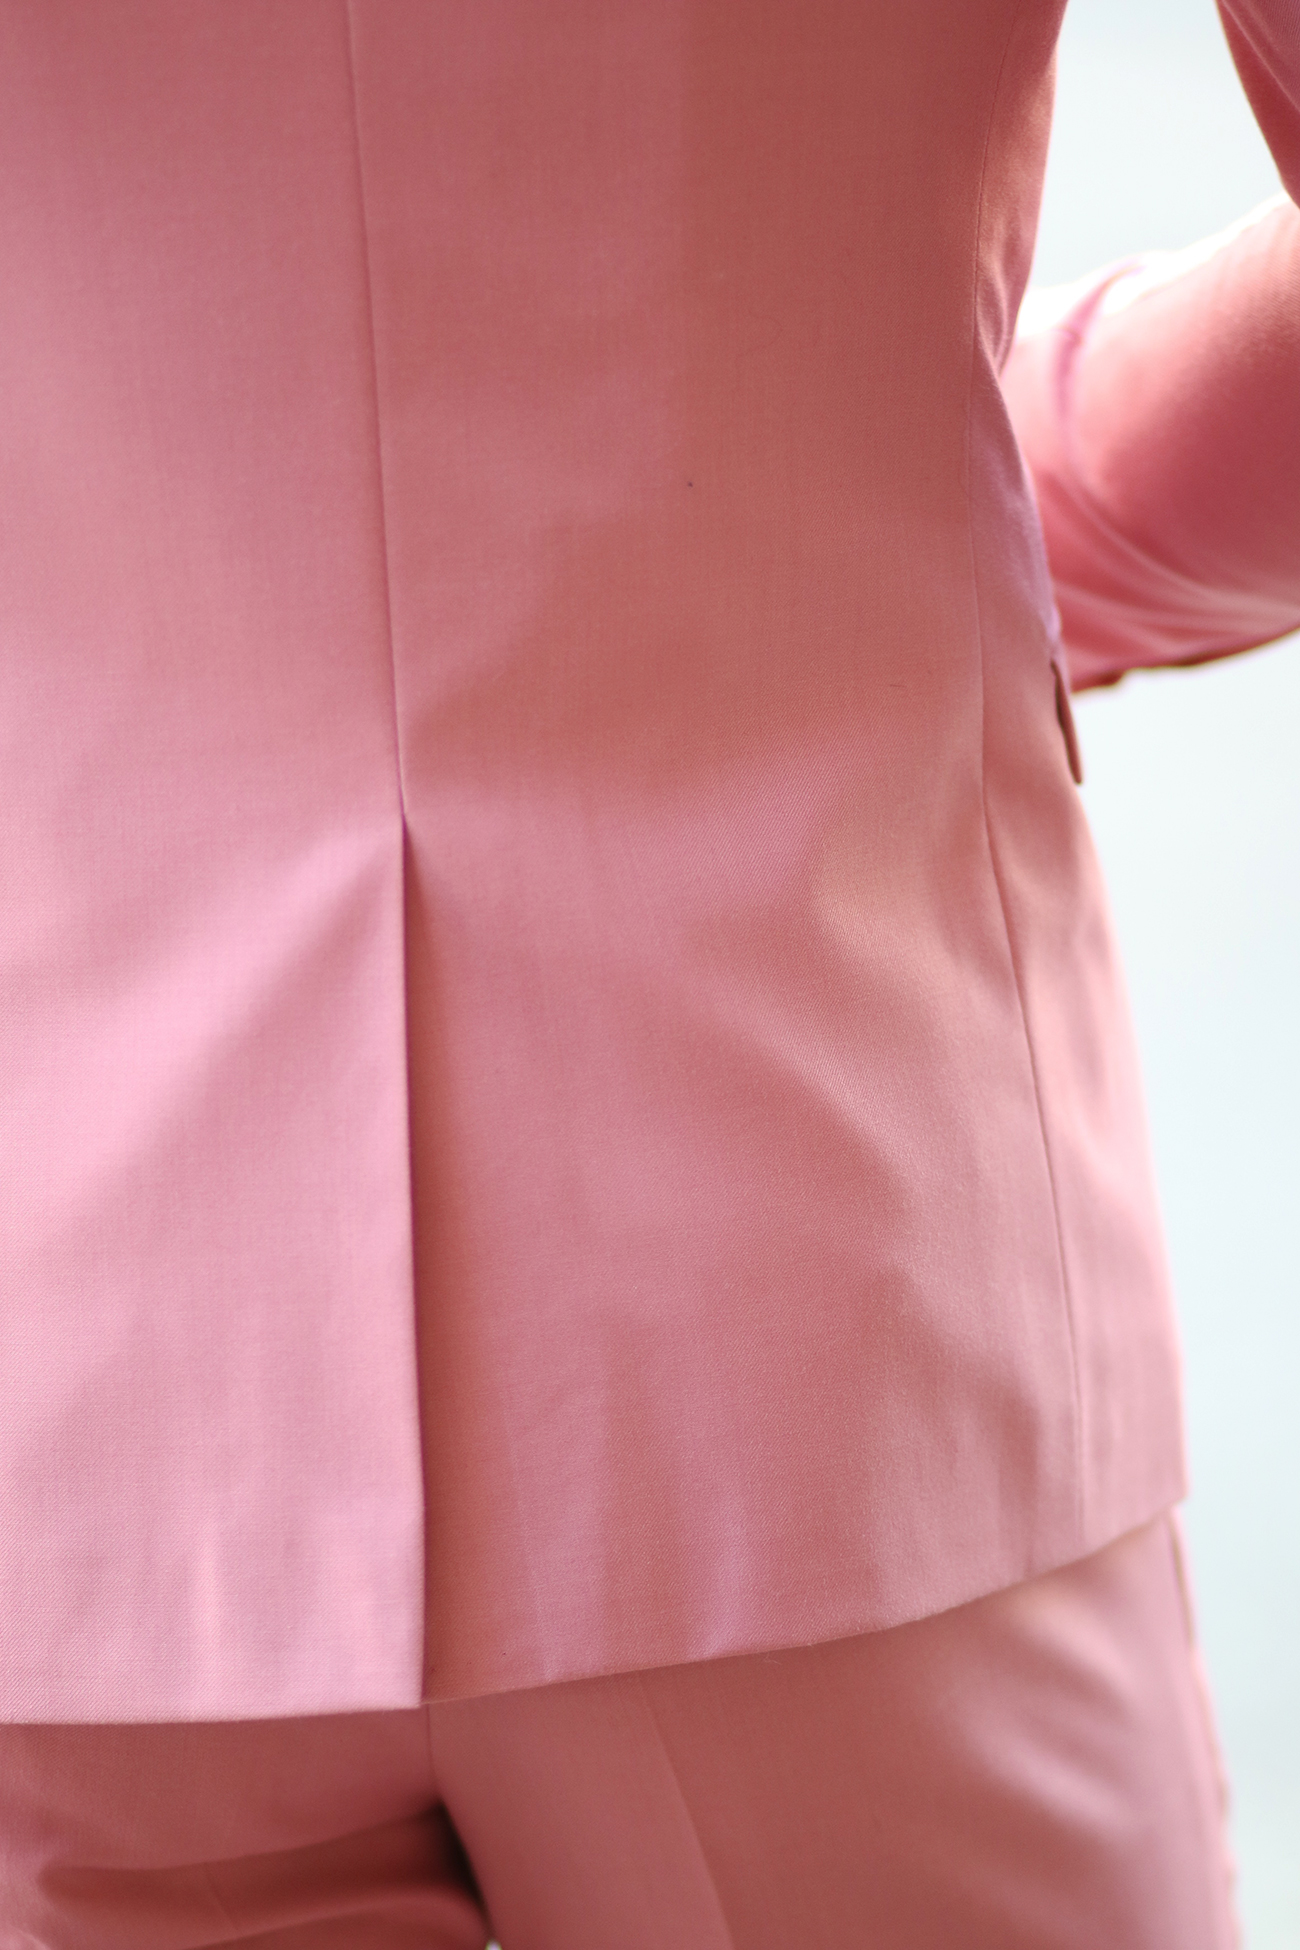 dapper-pink-suit